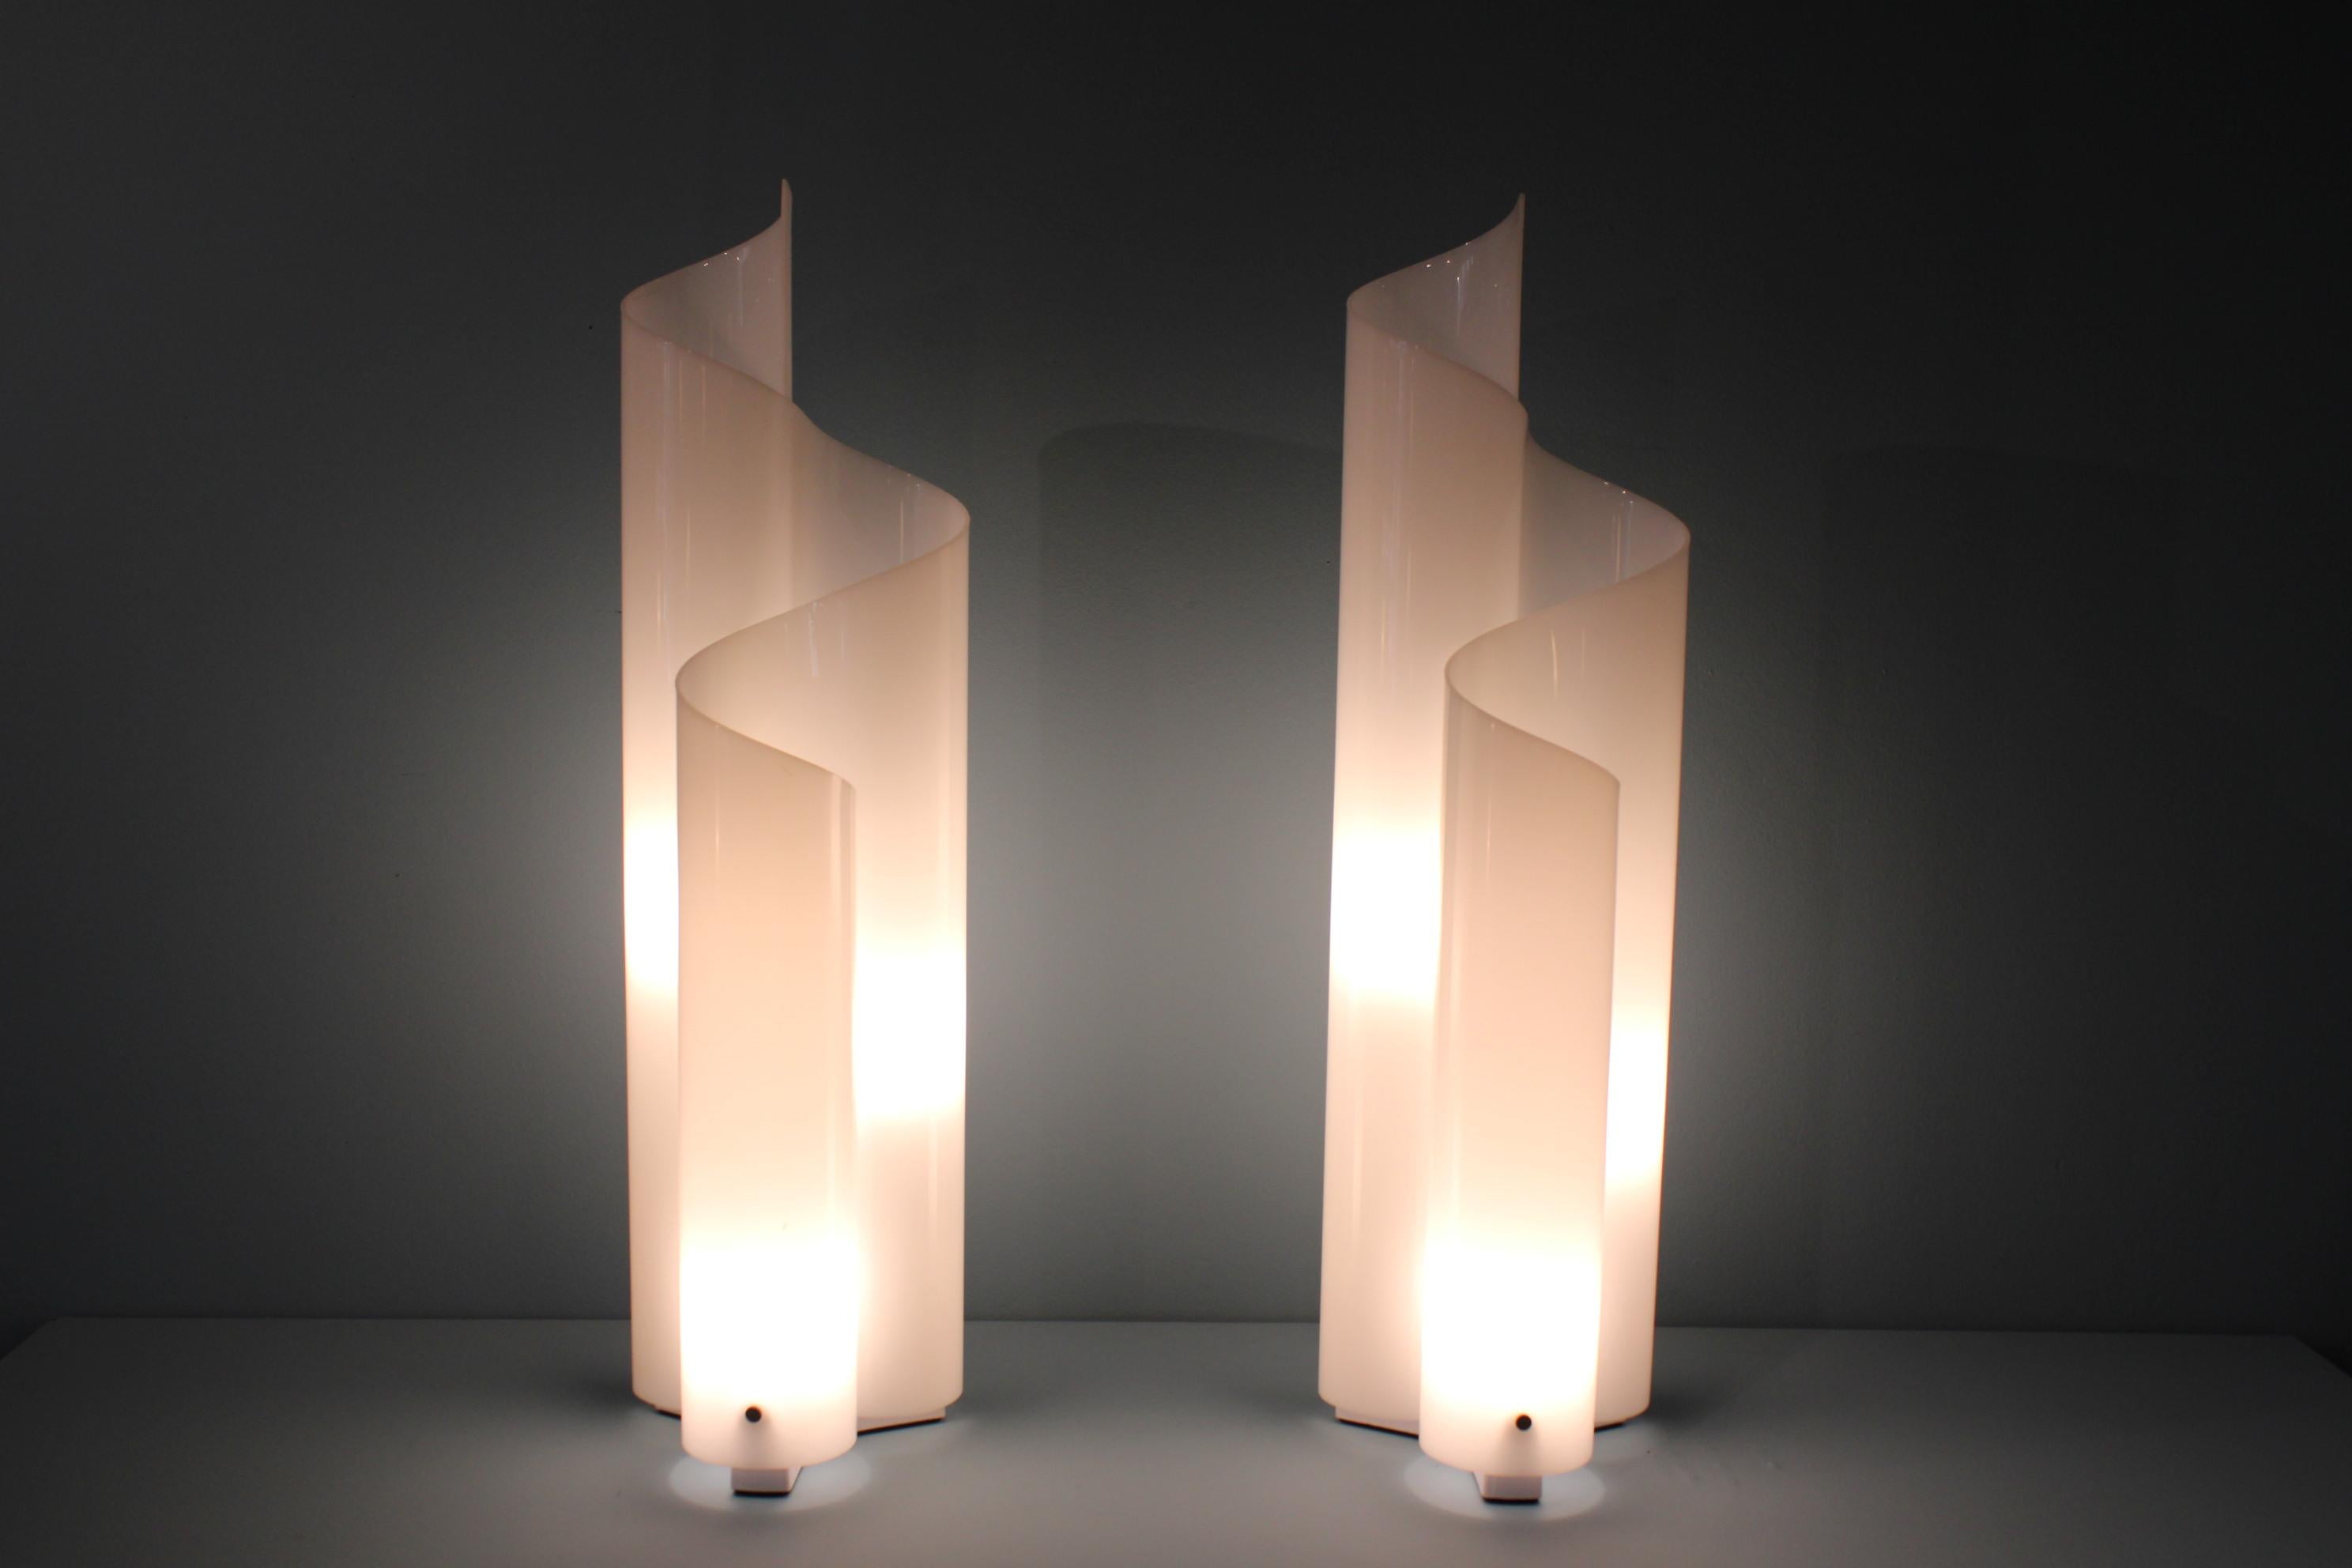 Pair of lamps, Mezzachimera model, by Vico Magistretti for Artemide. 
Italy, circa 1970.